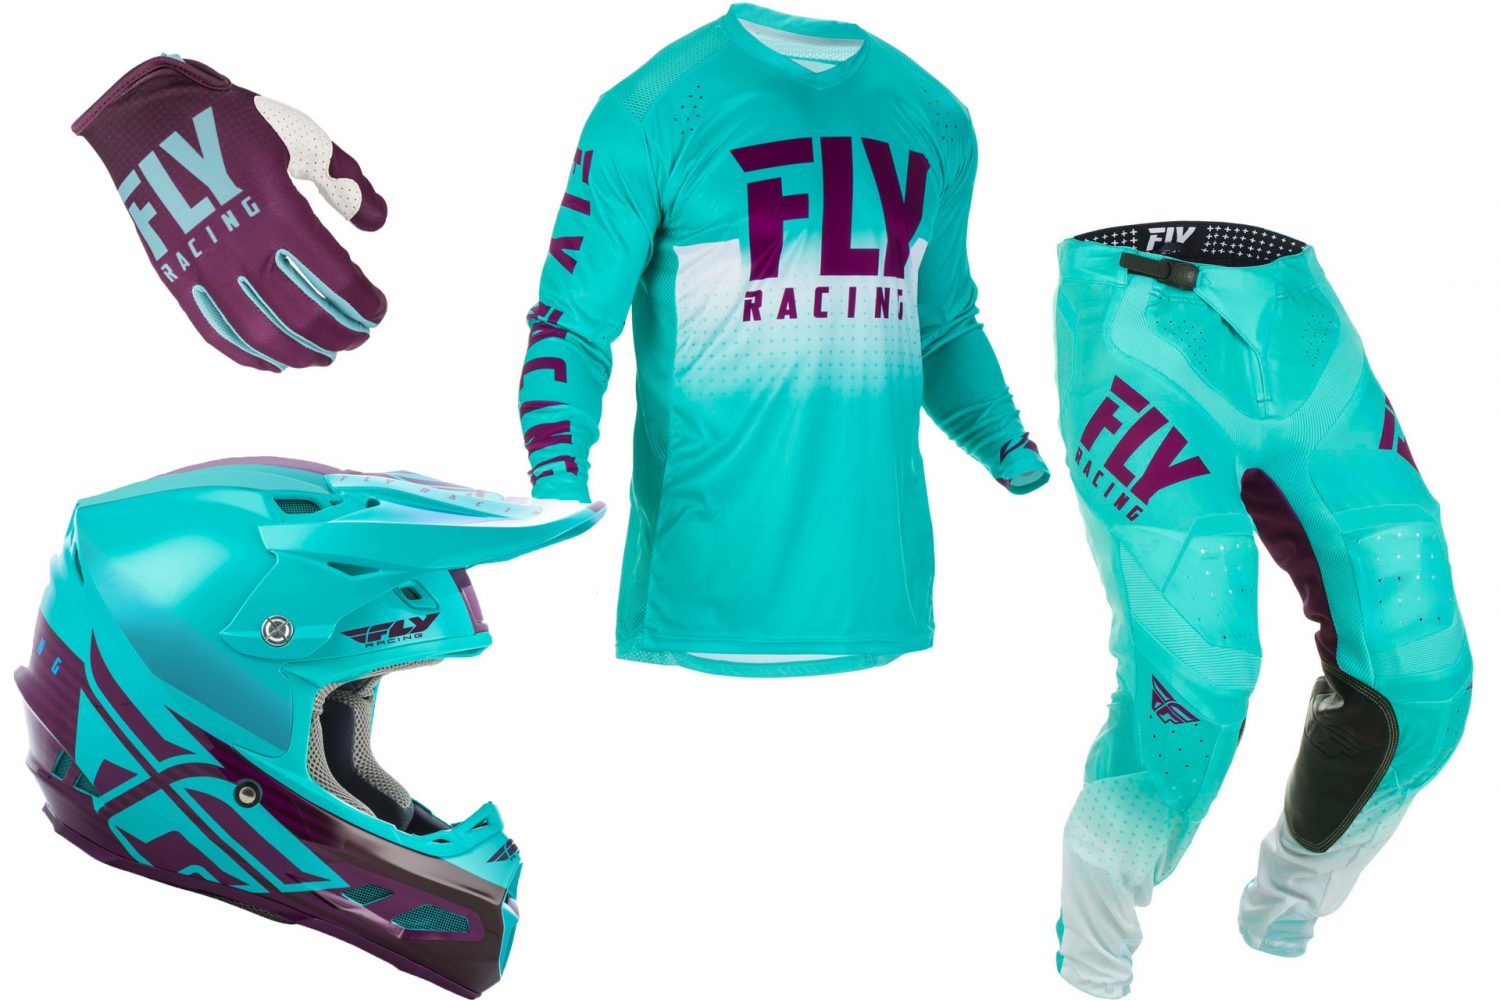 Fly Racing's 2019 Lite Hydrogen Racewear